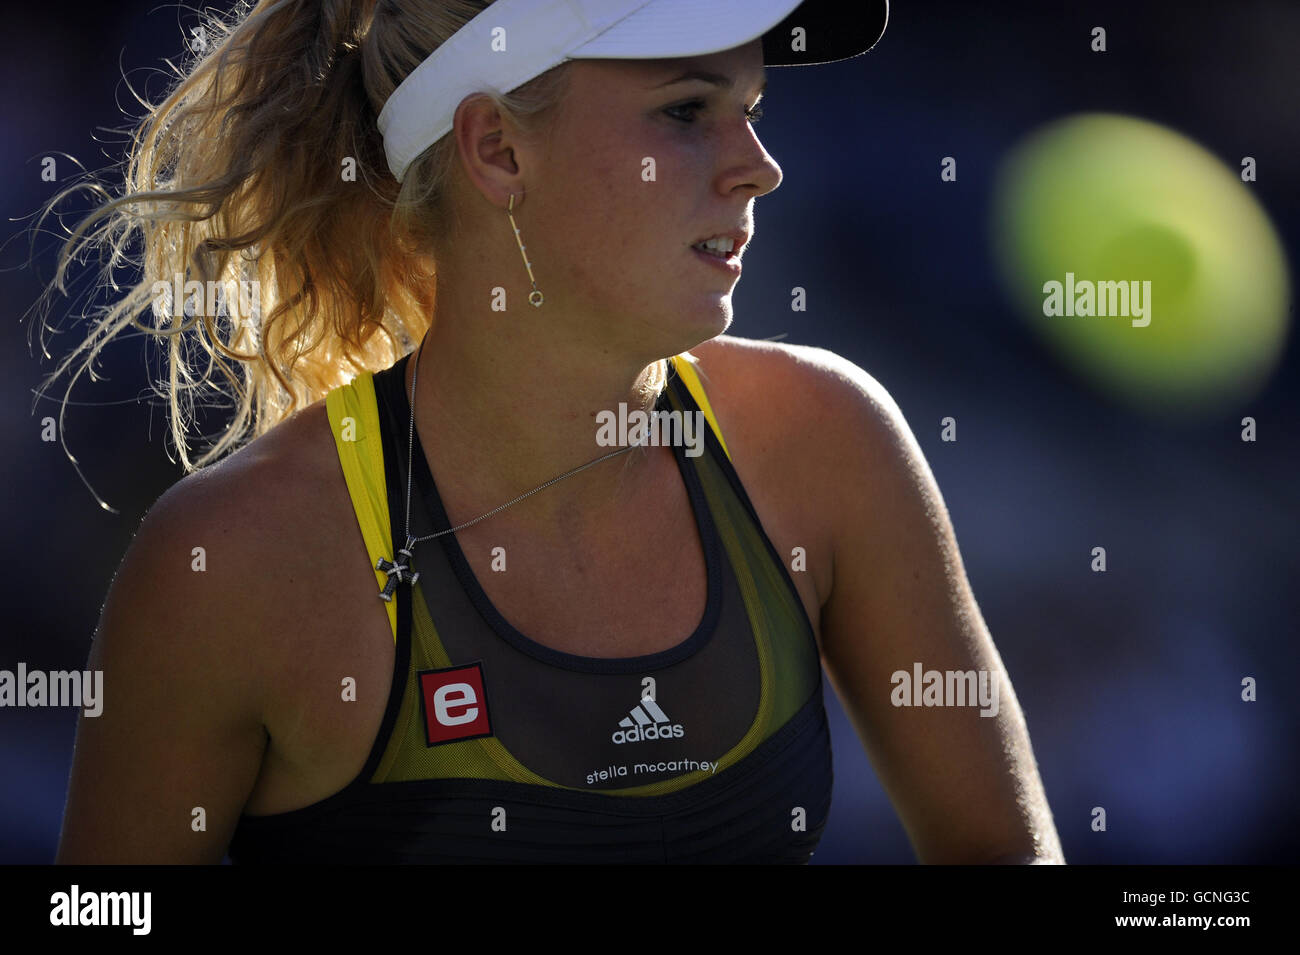 Caroline Wozniacki au Danemark pendant le huitième jour de l'US Open, à Flushing Meadows, New York, États-Unis. Banque D'Images